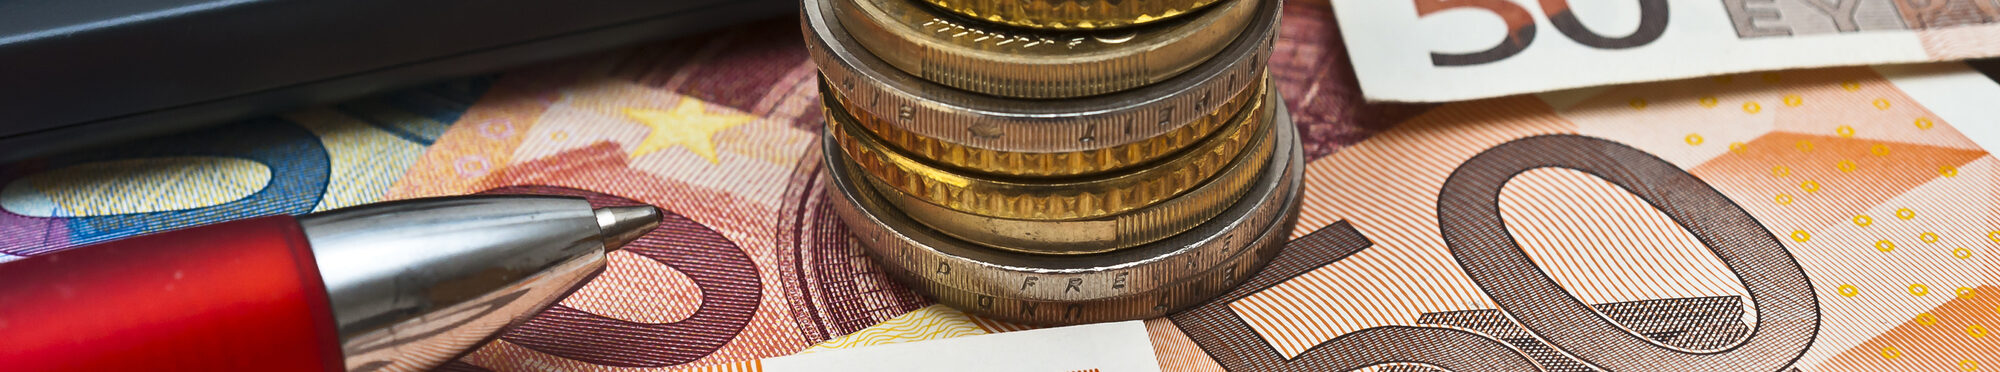 Motivbild Euromünzen und Scheine [Foto: ©Stockfotos-MG - stock.adobe.com]